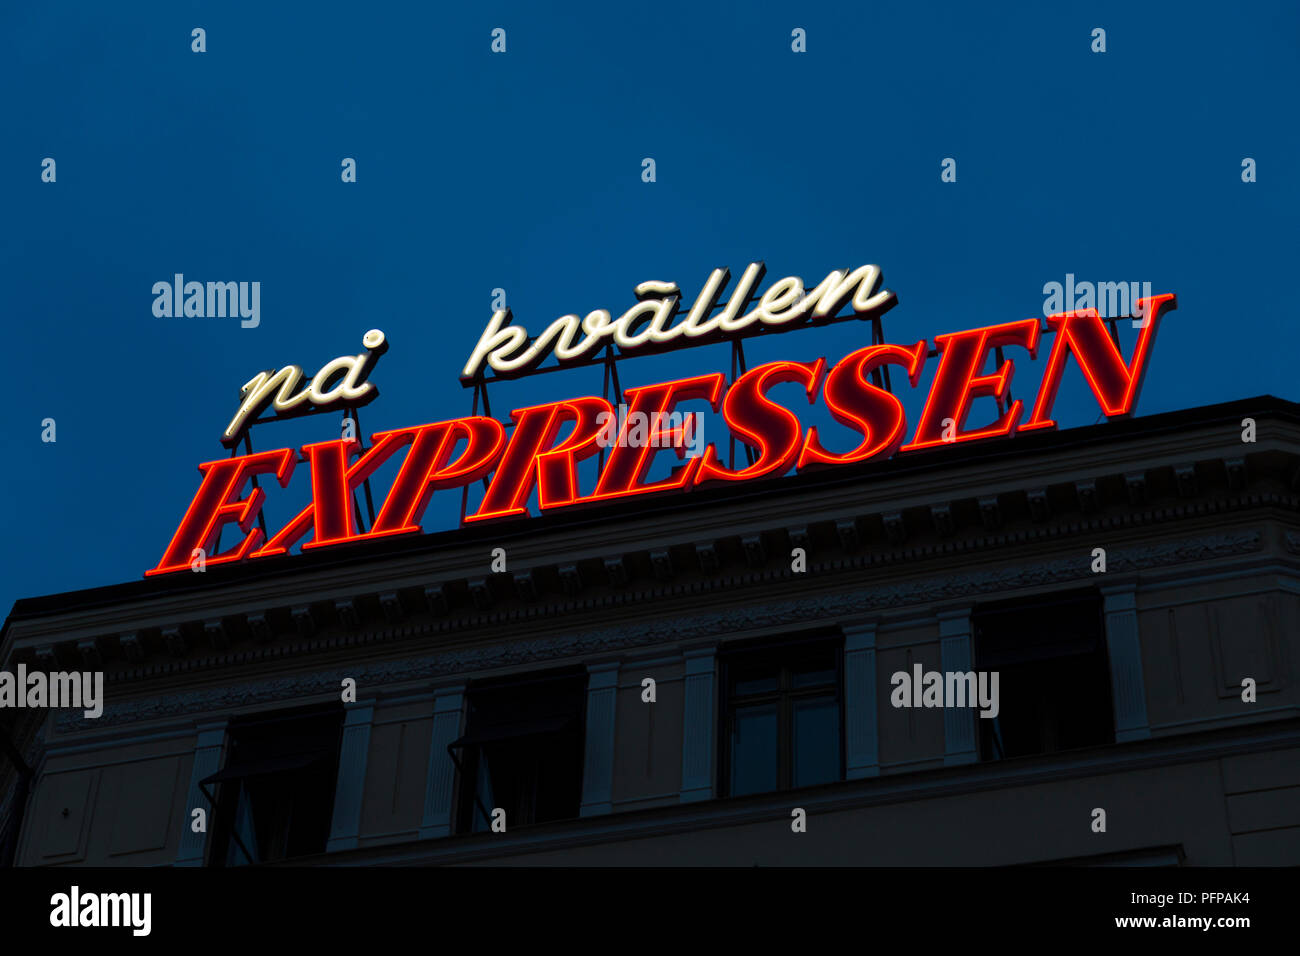 Señal de neón de Expressen, el diario sueco en la noche "Pa kvallen Expressen' (Expressen en la noche), Estocolmo, Suecia Foto de stock